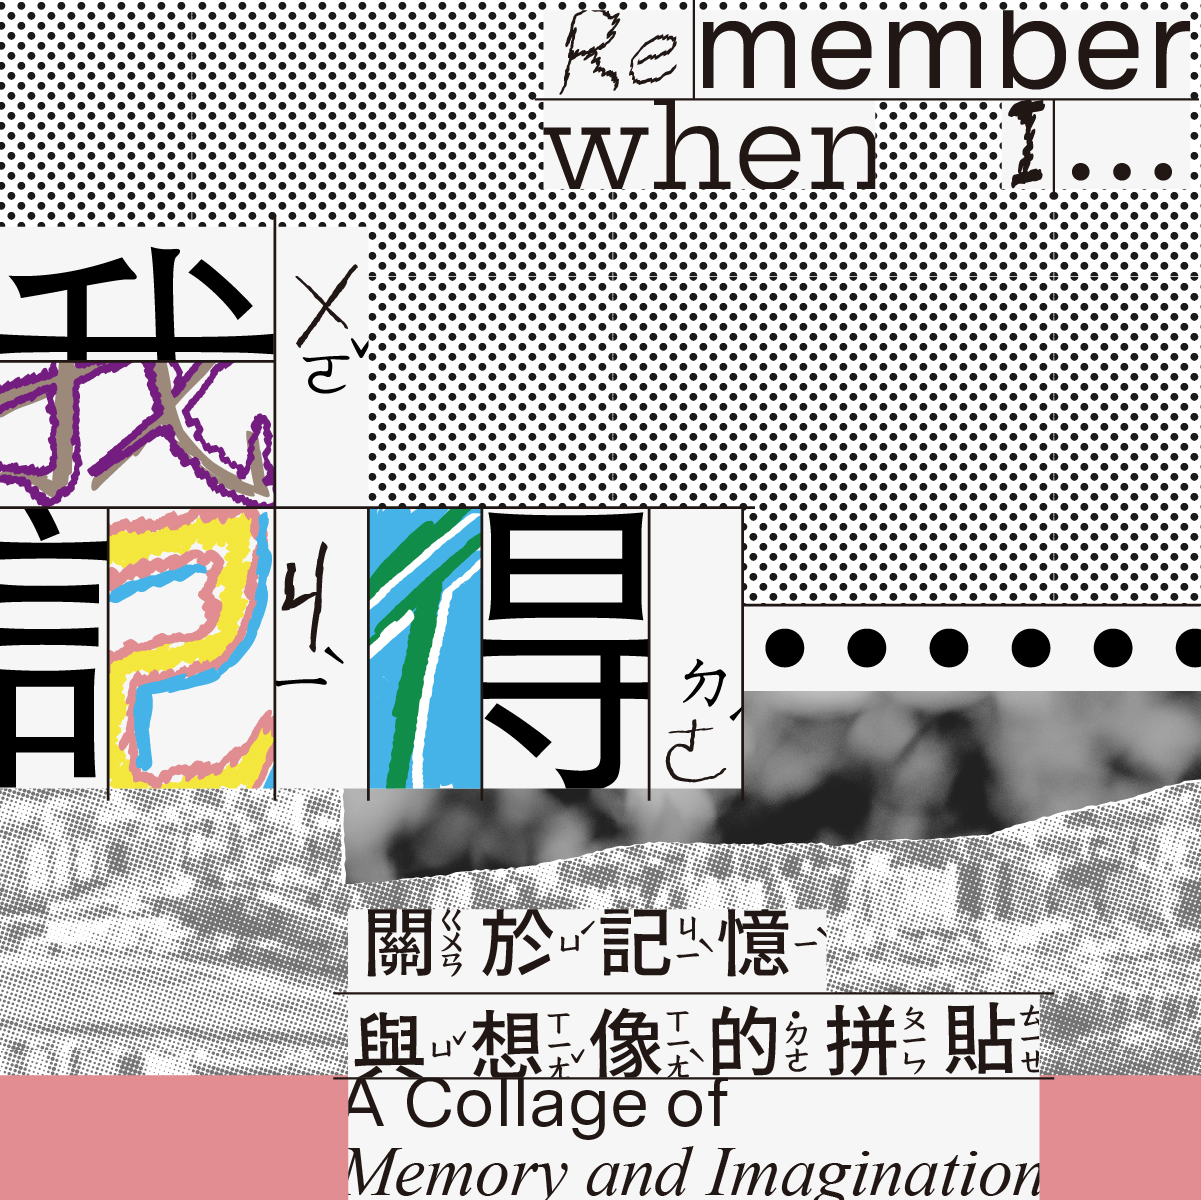 兒藝基地《「我記得……」：關於記憶與想像的拼貼》兒童藝術教育展